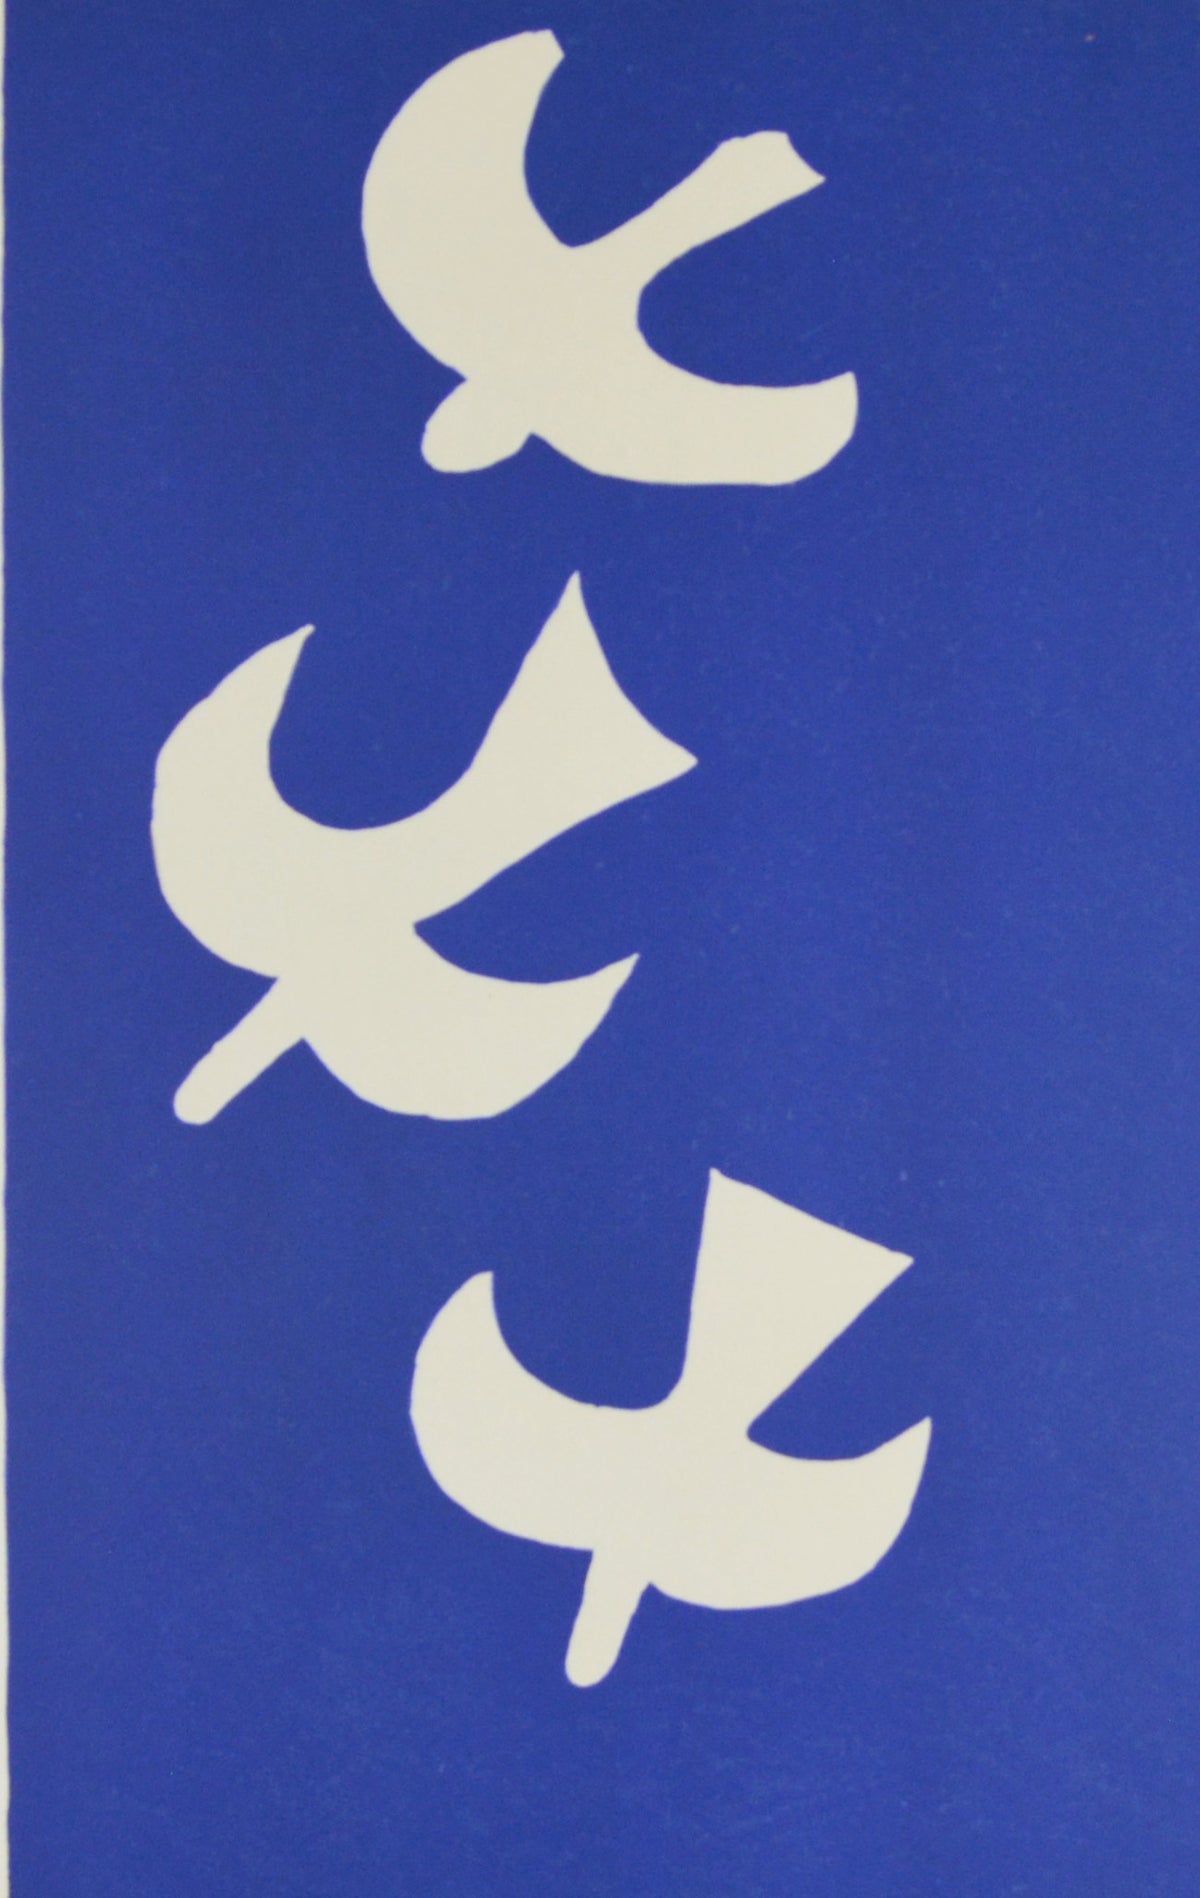 ジョルジュ ブラック『三羽の鳥【ジョルジュ・ブラックのスケッチブックより】』版画 リトグラフ 1955年パリで制作 ムルロ工房 作家生前作品 –  版画専門店 OROCHI